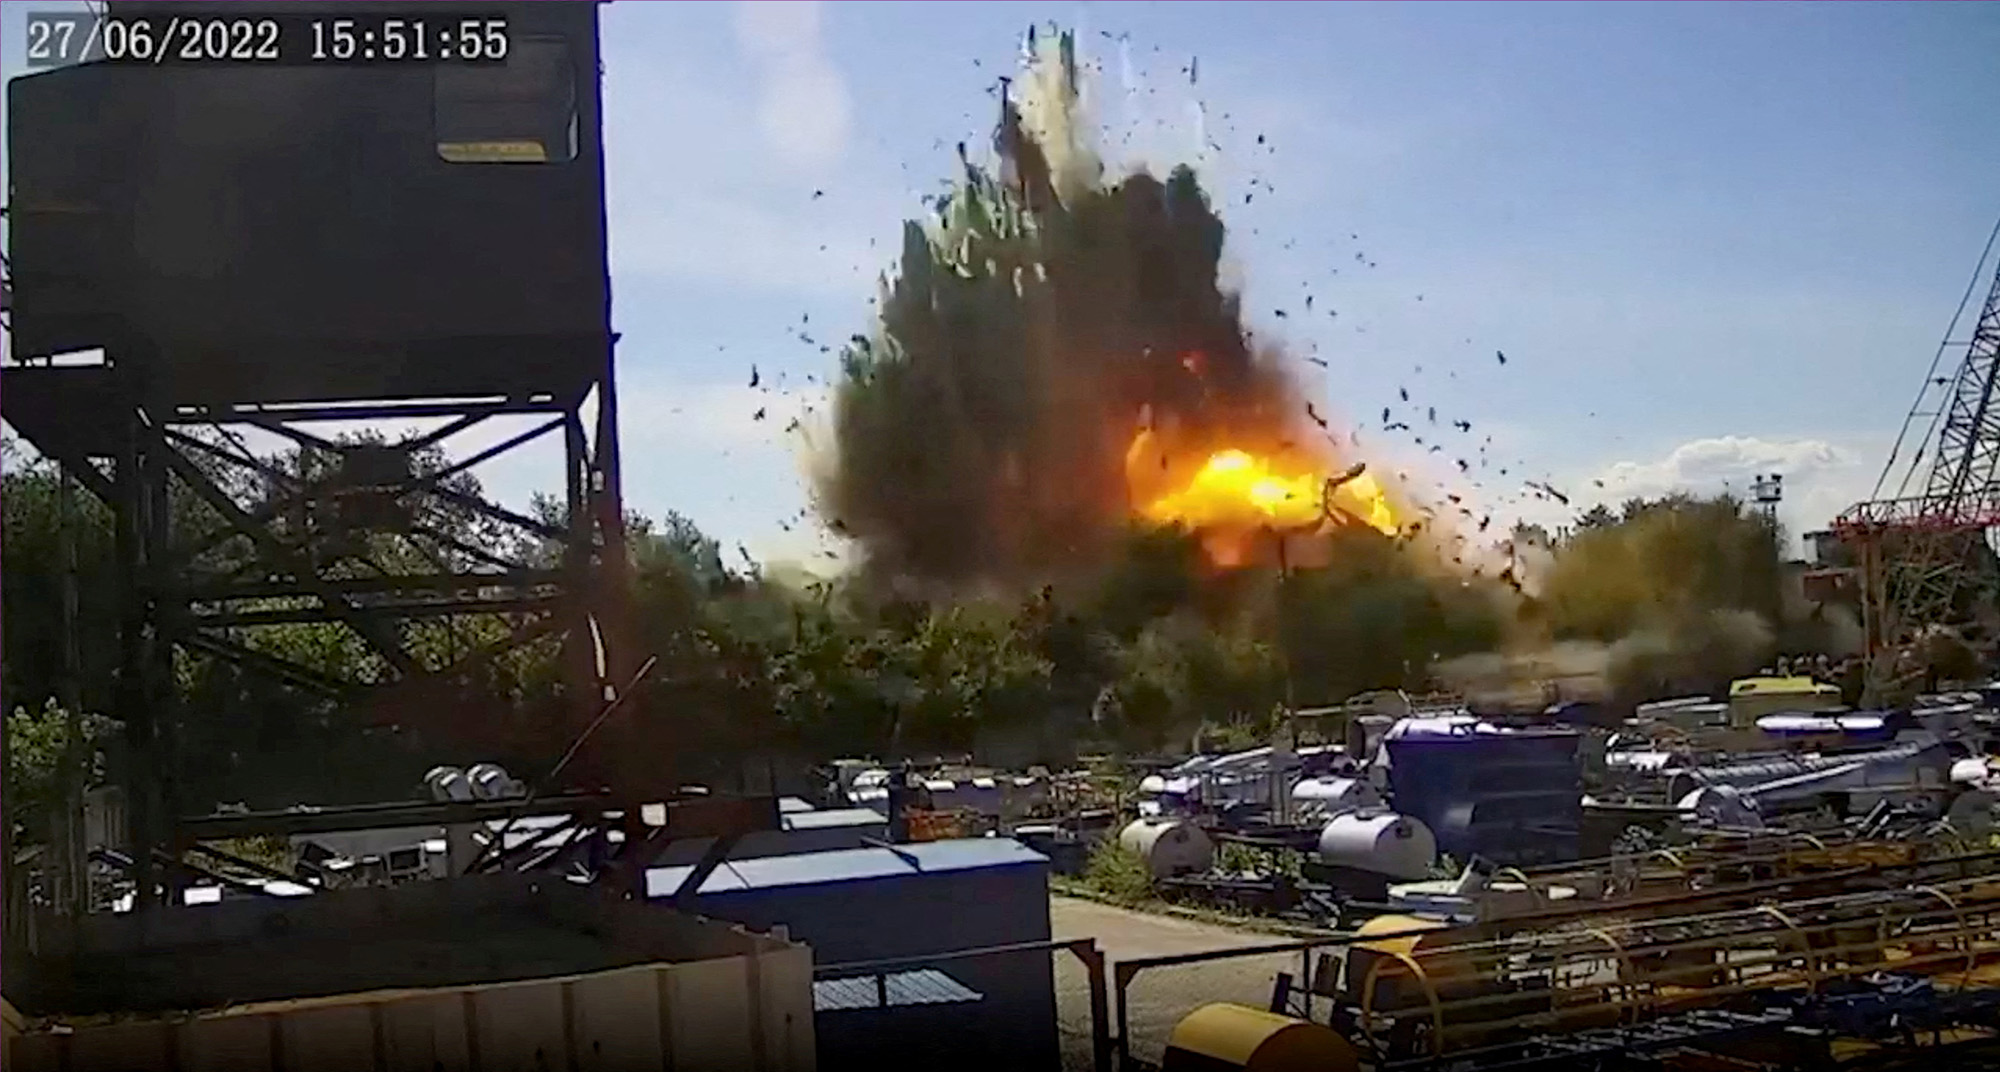 Una vista de la explosión en el centro comercial Kremenchug, Ucrania, en esta imagen fija de las imágenes de CCTV publicadas el 28 de junio.